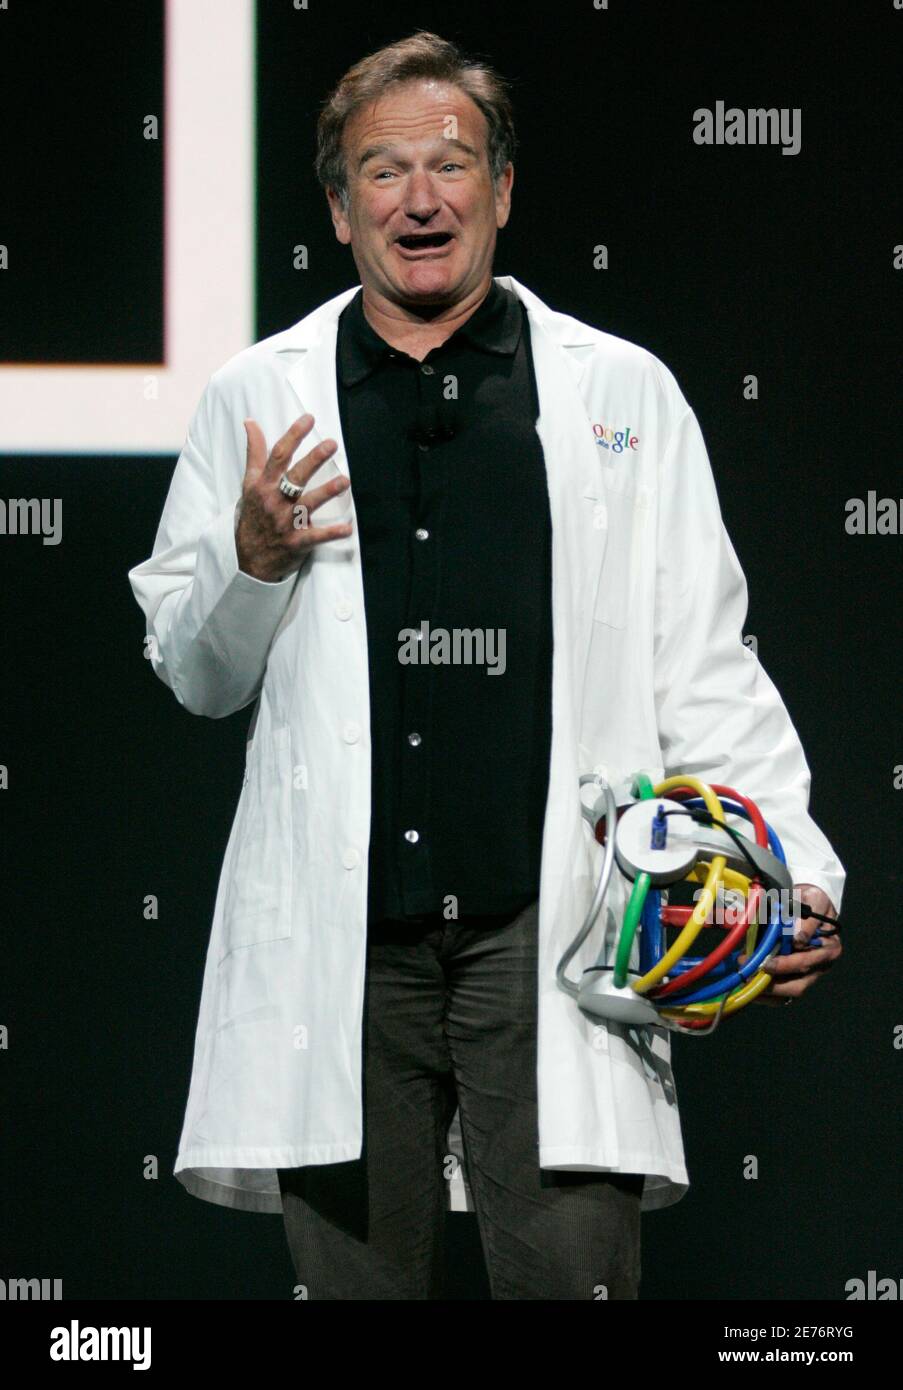 Schauspieler-Komiker Robin Williams führt eine Routine bei Google [Mitbegründer Larry Page Keynote] Rede auf der Consumer Electronics Show in Las Vegas, Nevada 6. Januar 2006. Stockfoto